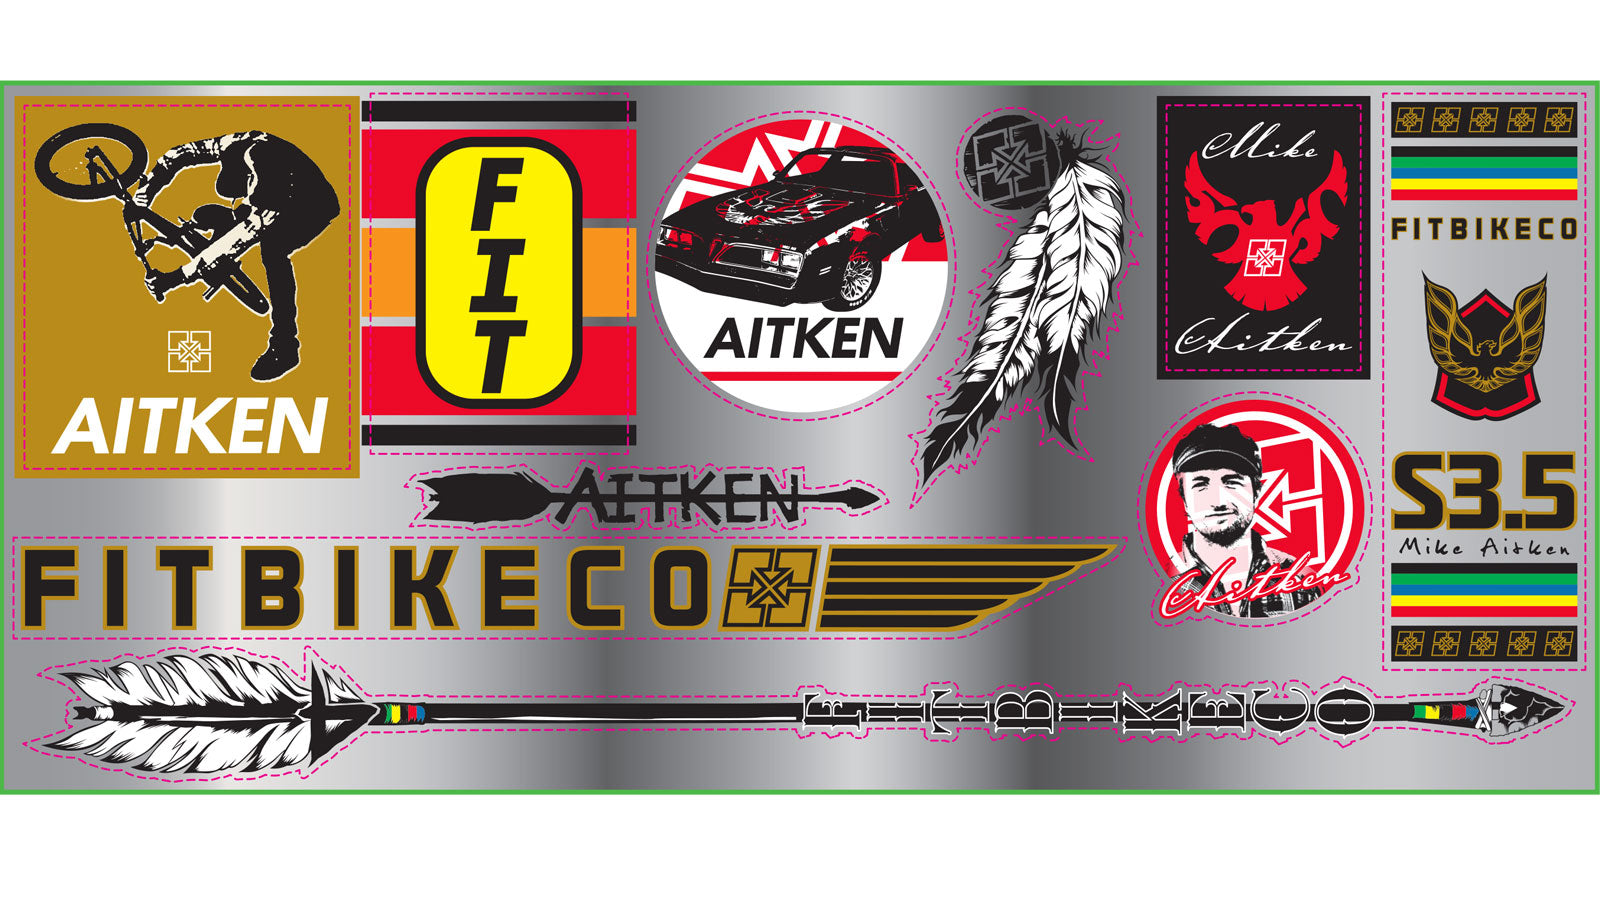 Fit Mike Aitken BMX Sticker Sheet - Chrome/Silver Vinyl Decals - 9" x 4" sheet - 10 stickers